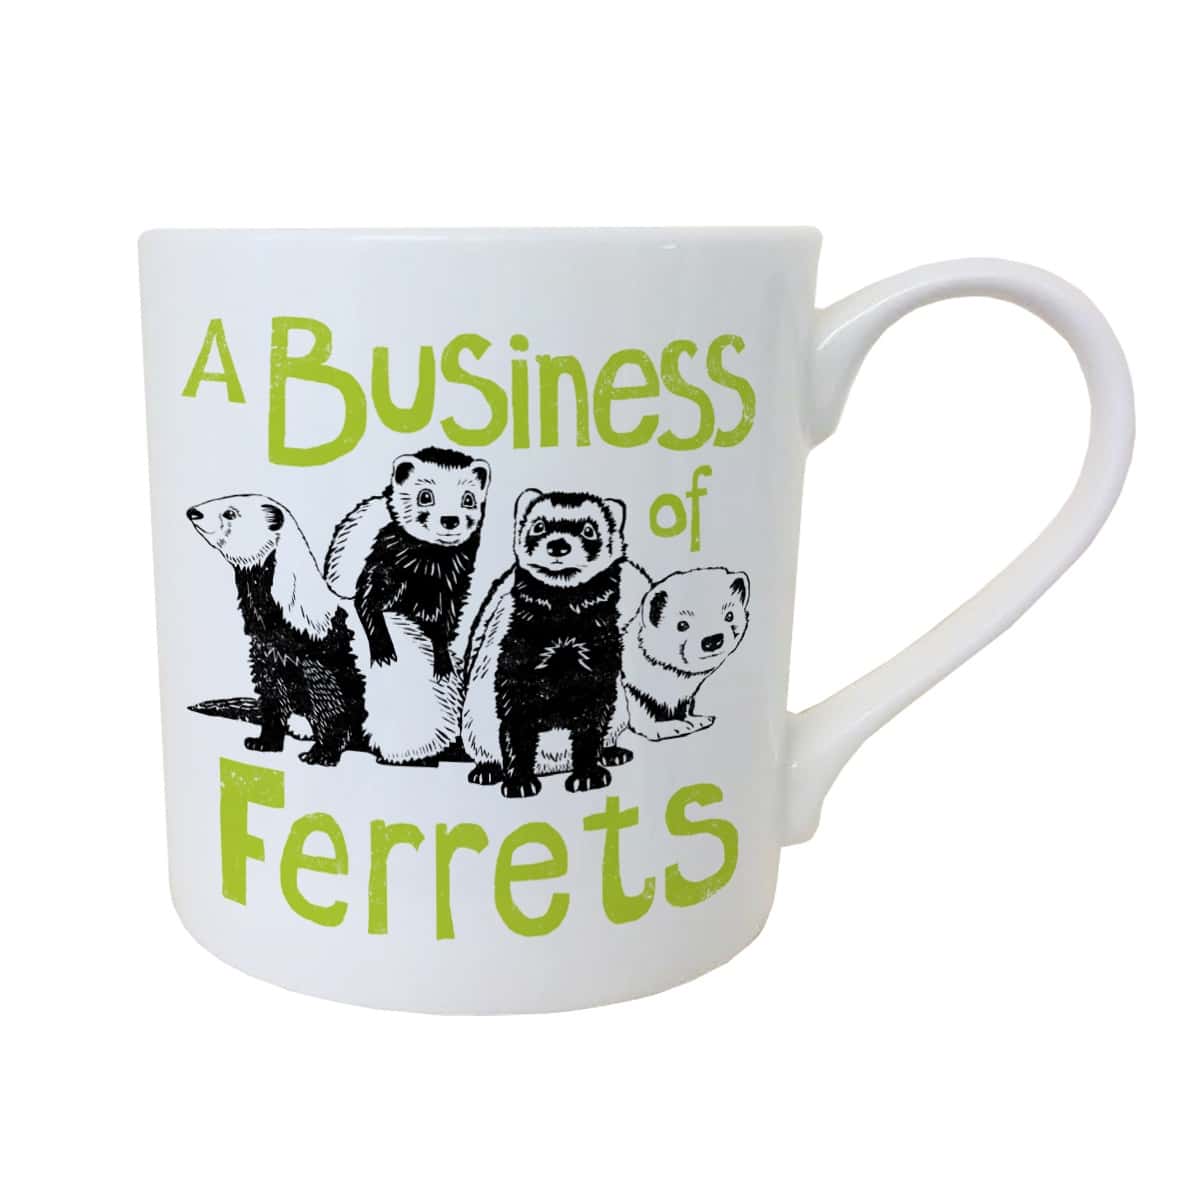 Business of Ferrets mug